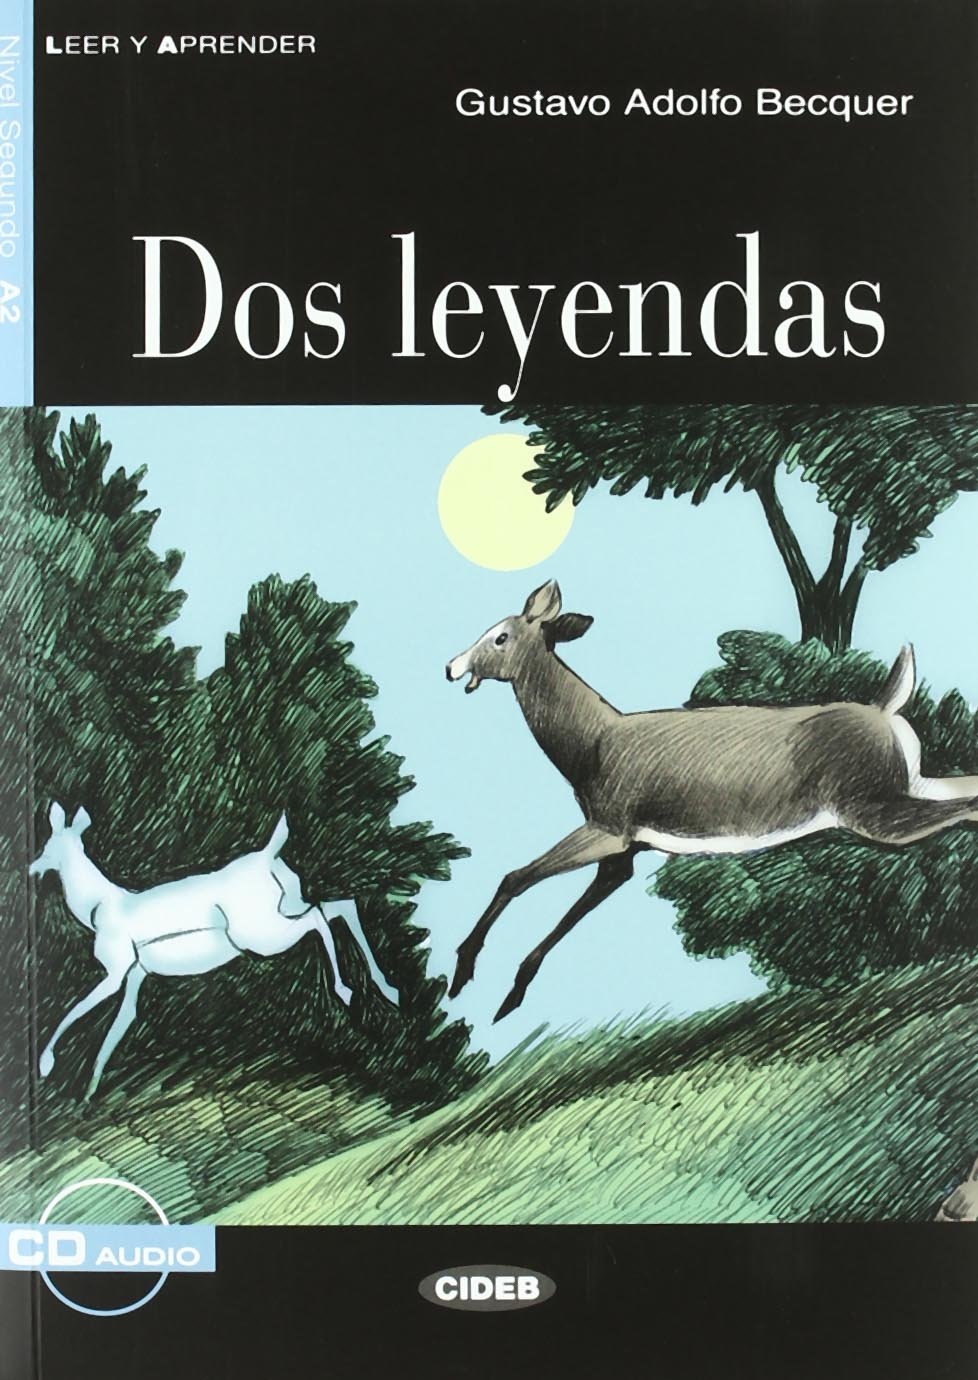 Gustavo A.B. Dos Leyendas 